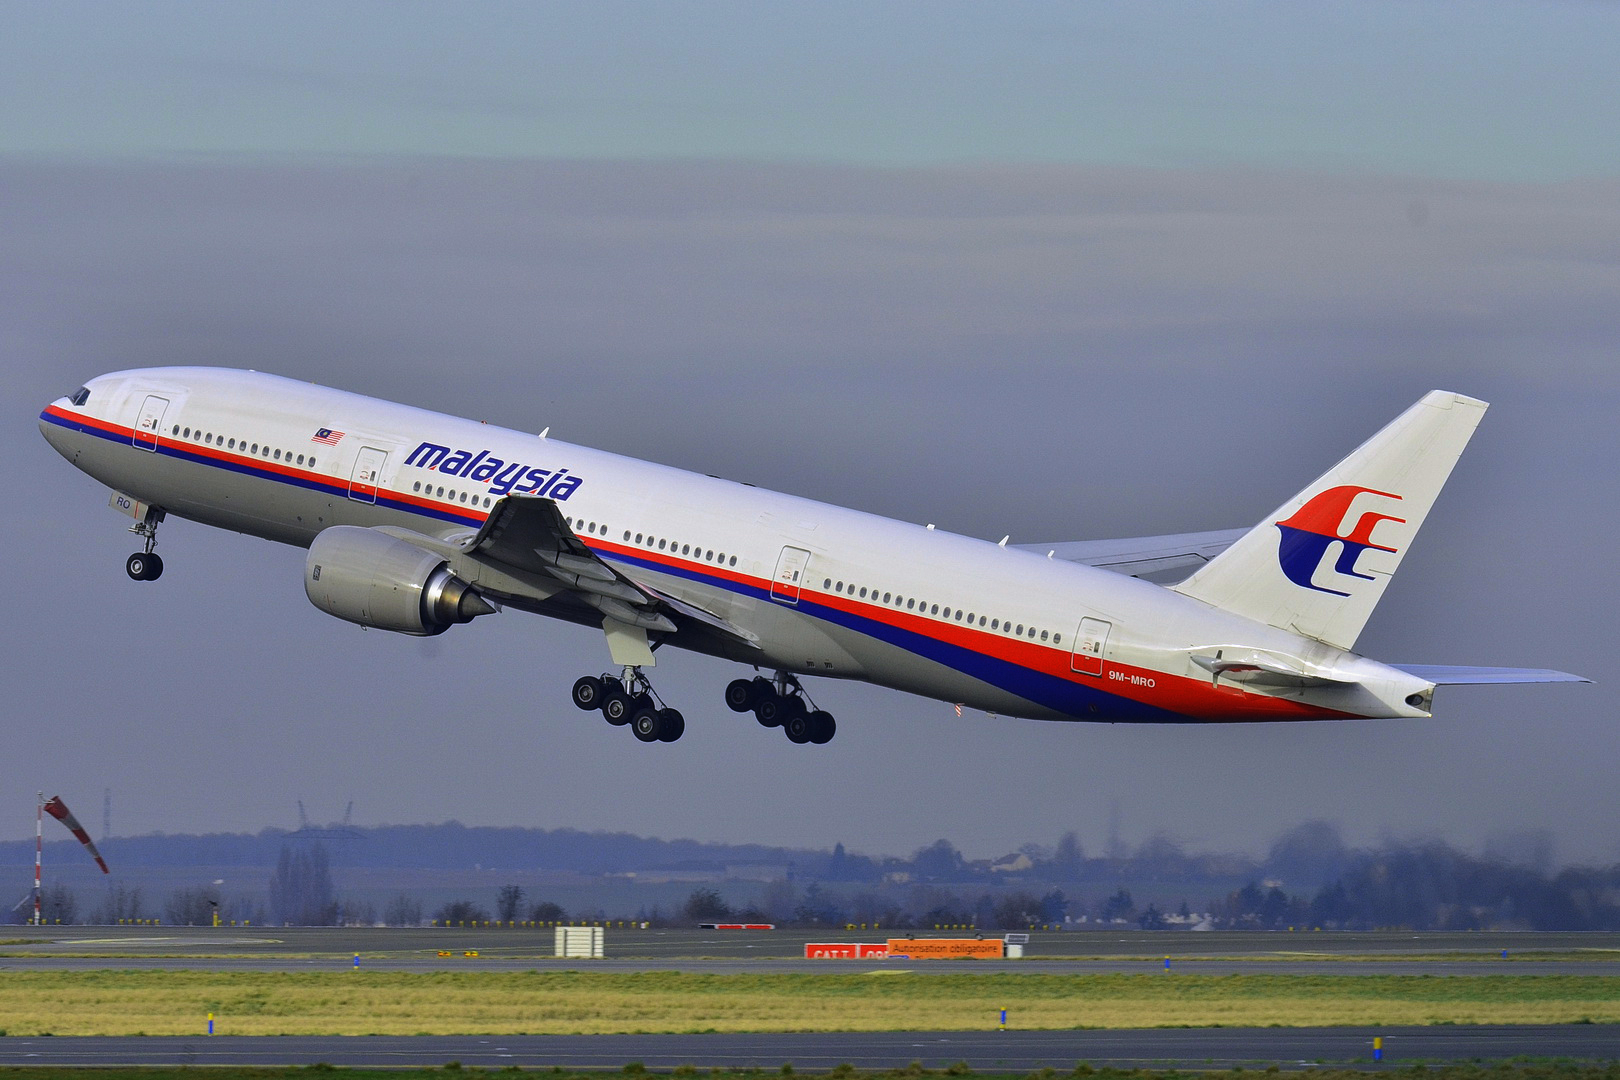 Hãng hàng không Malaysia Airlines cần đưa ra những giải pháp thay đổi hình ảnh để tồn tại